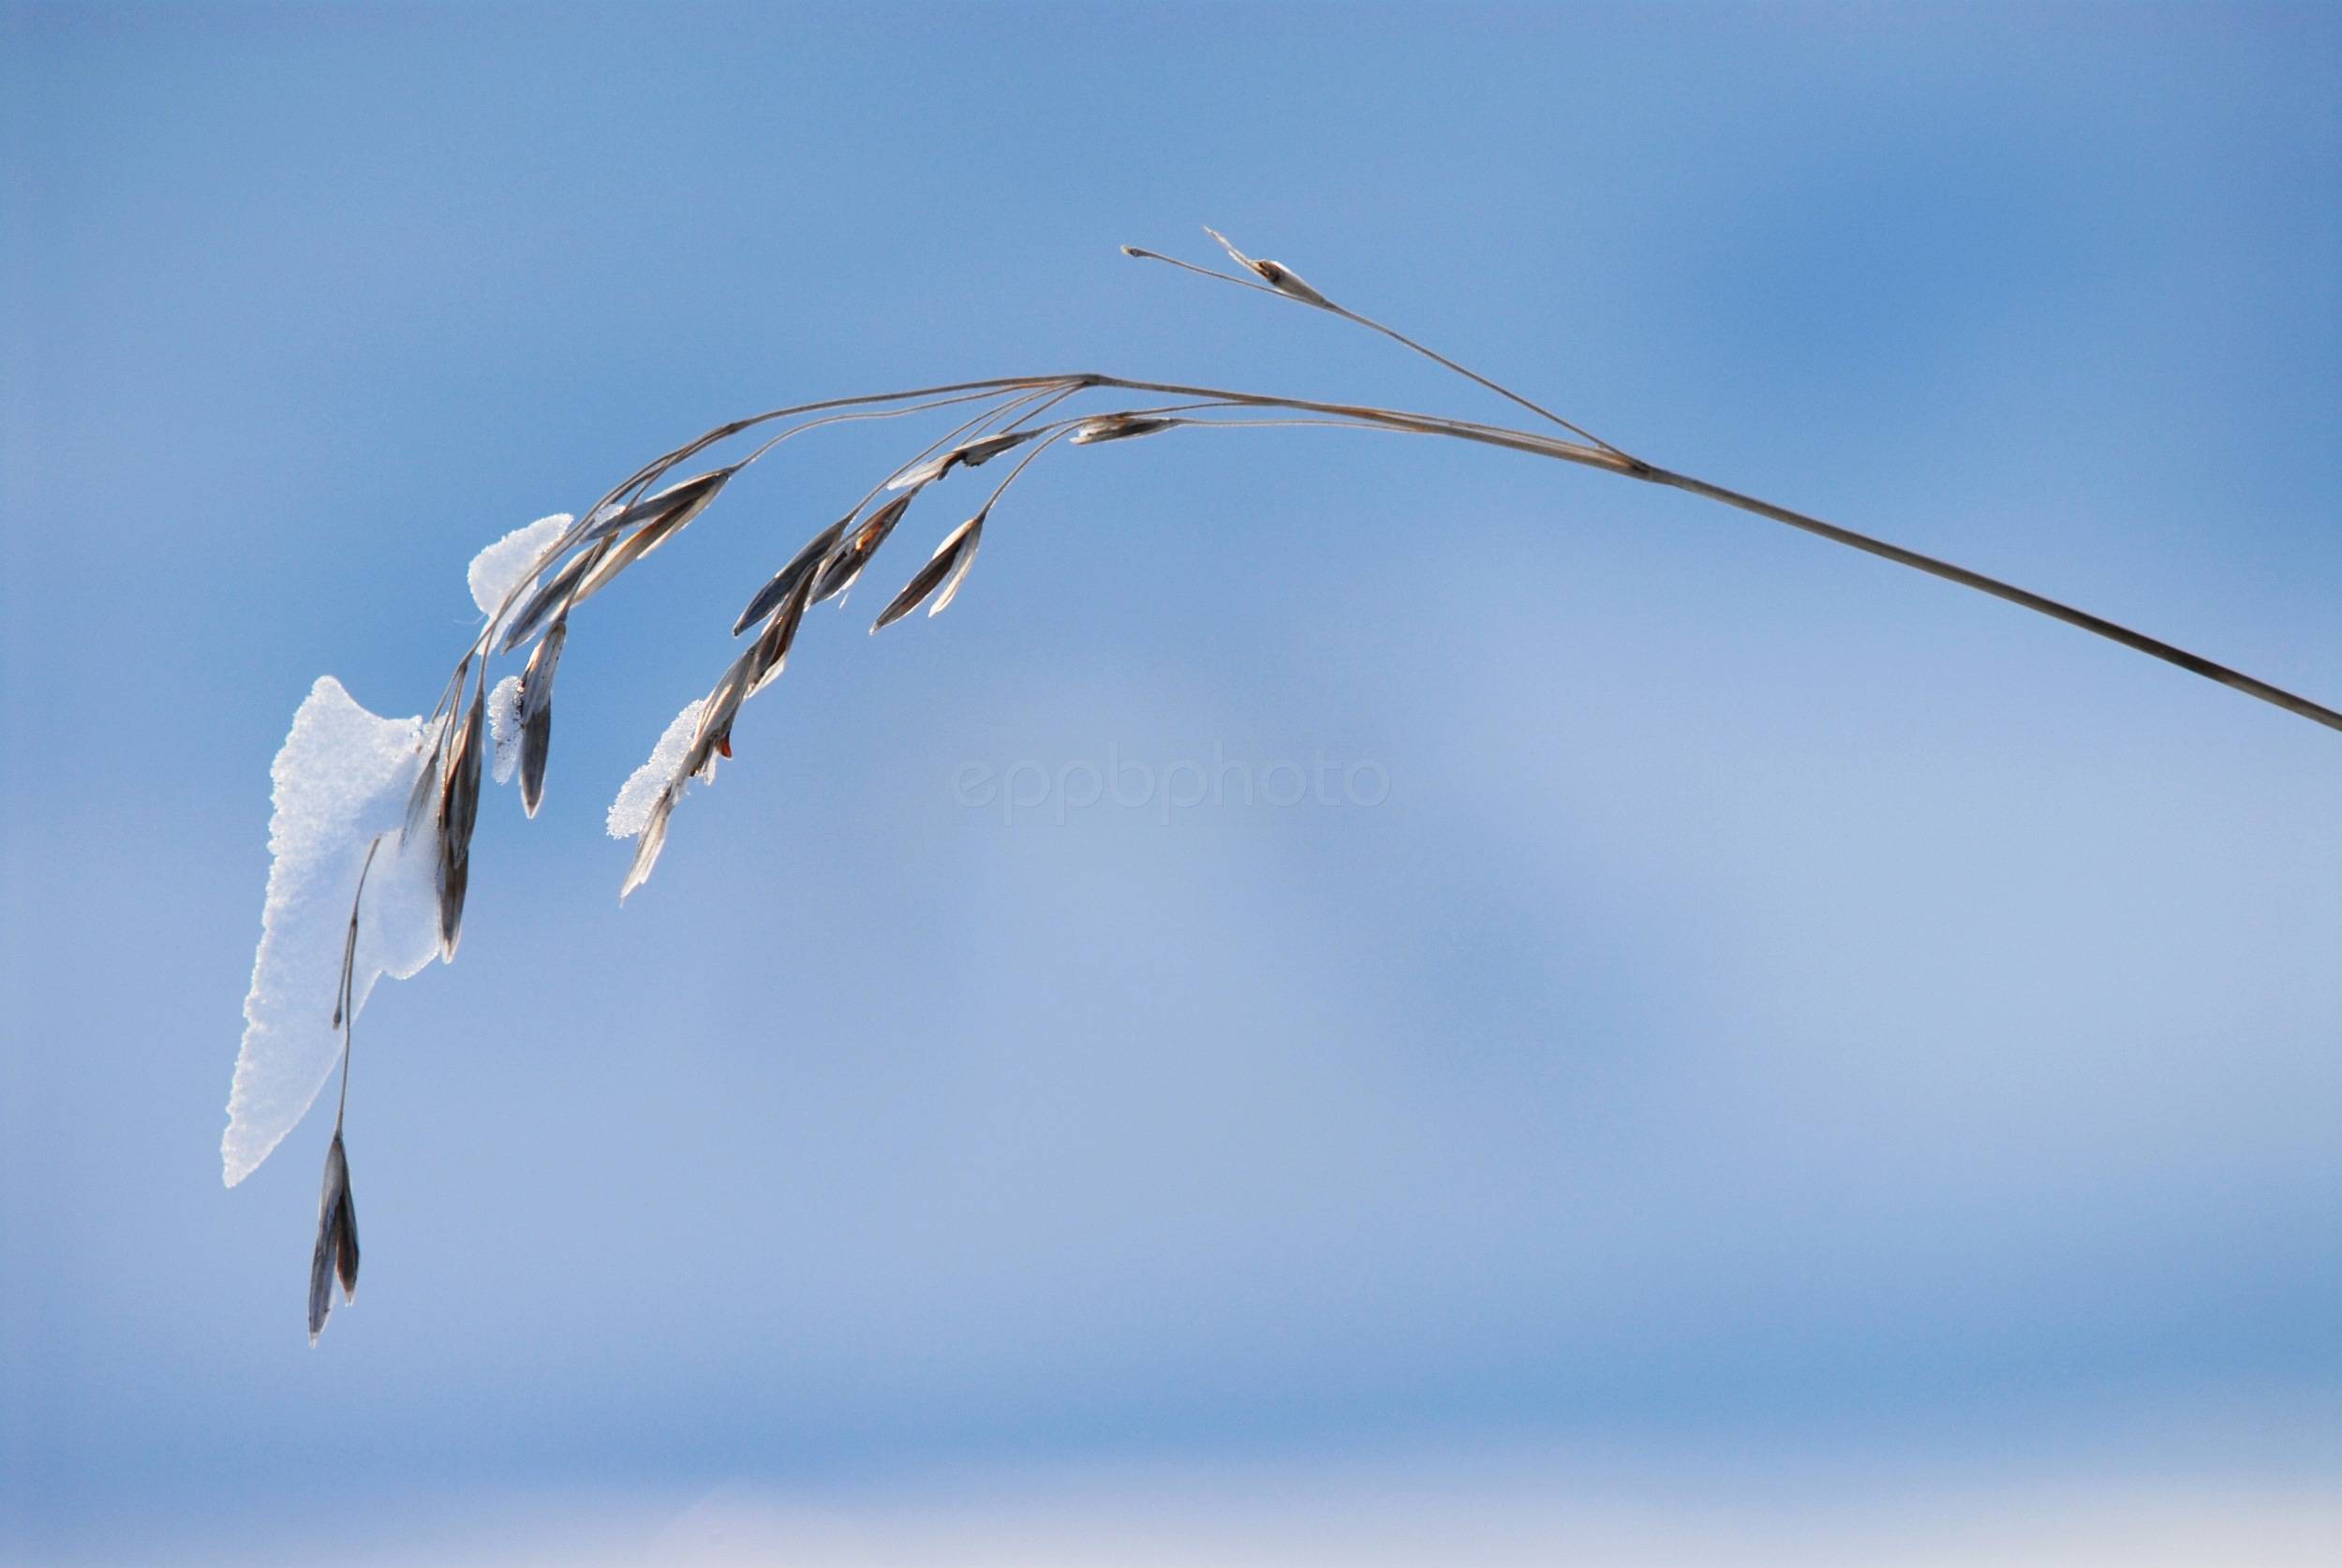 Snow Dragon — 2013-12-31 17:05:09 — © eppbphoto.com